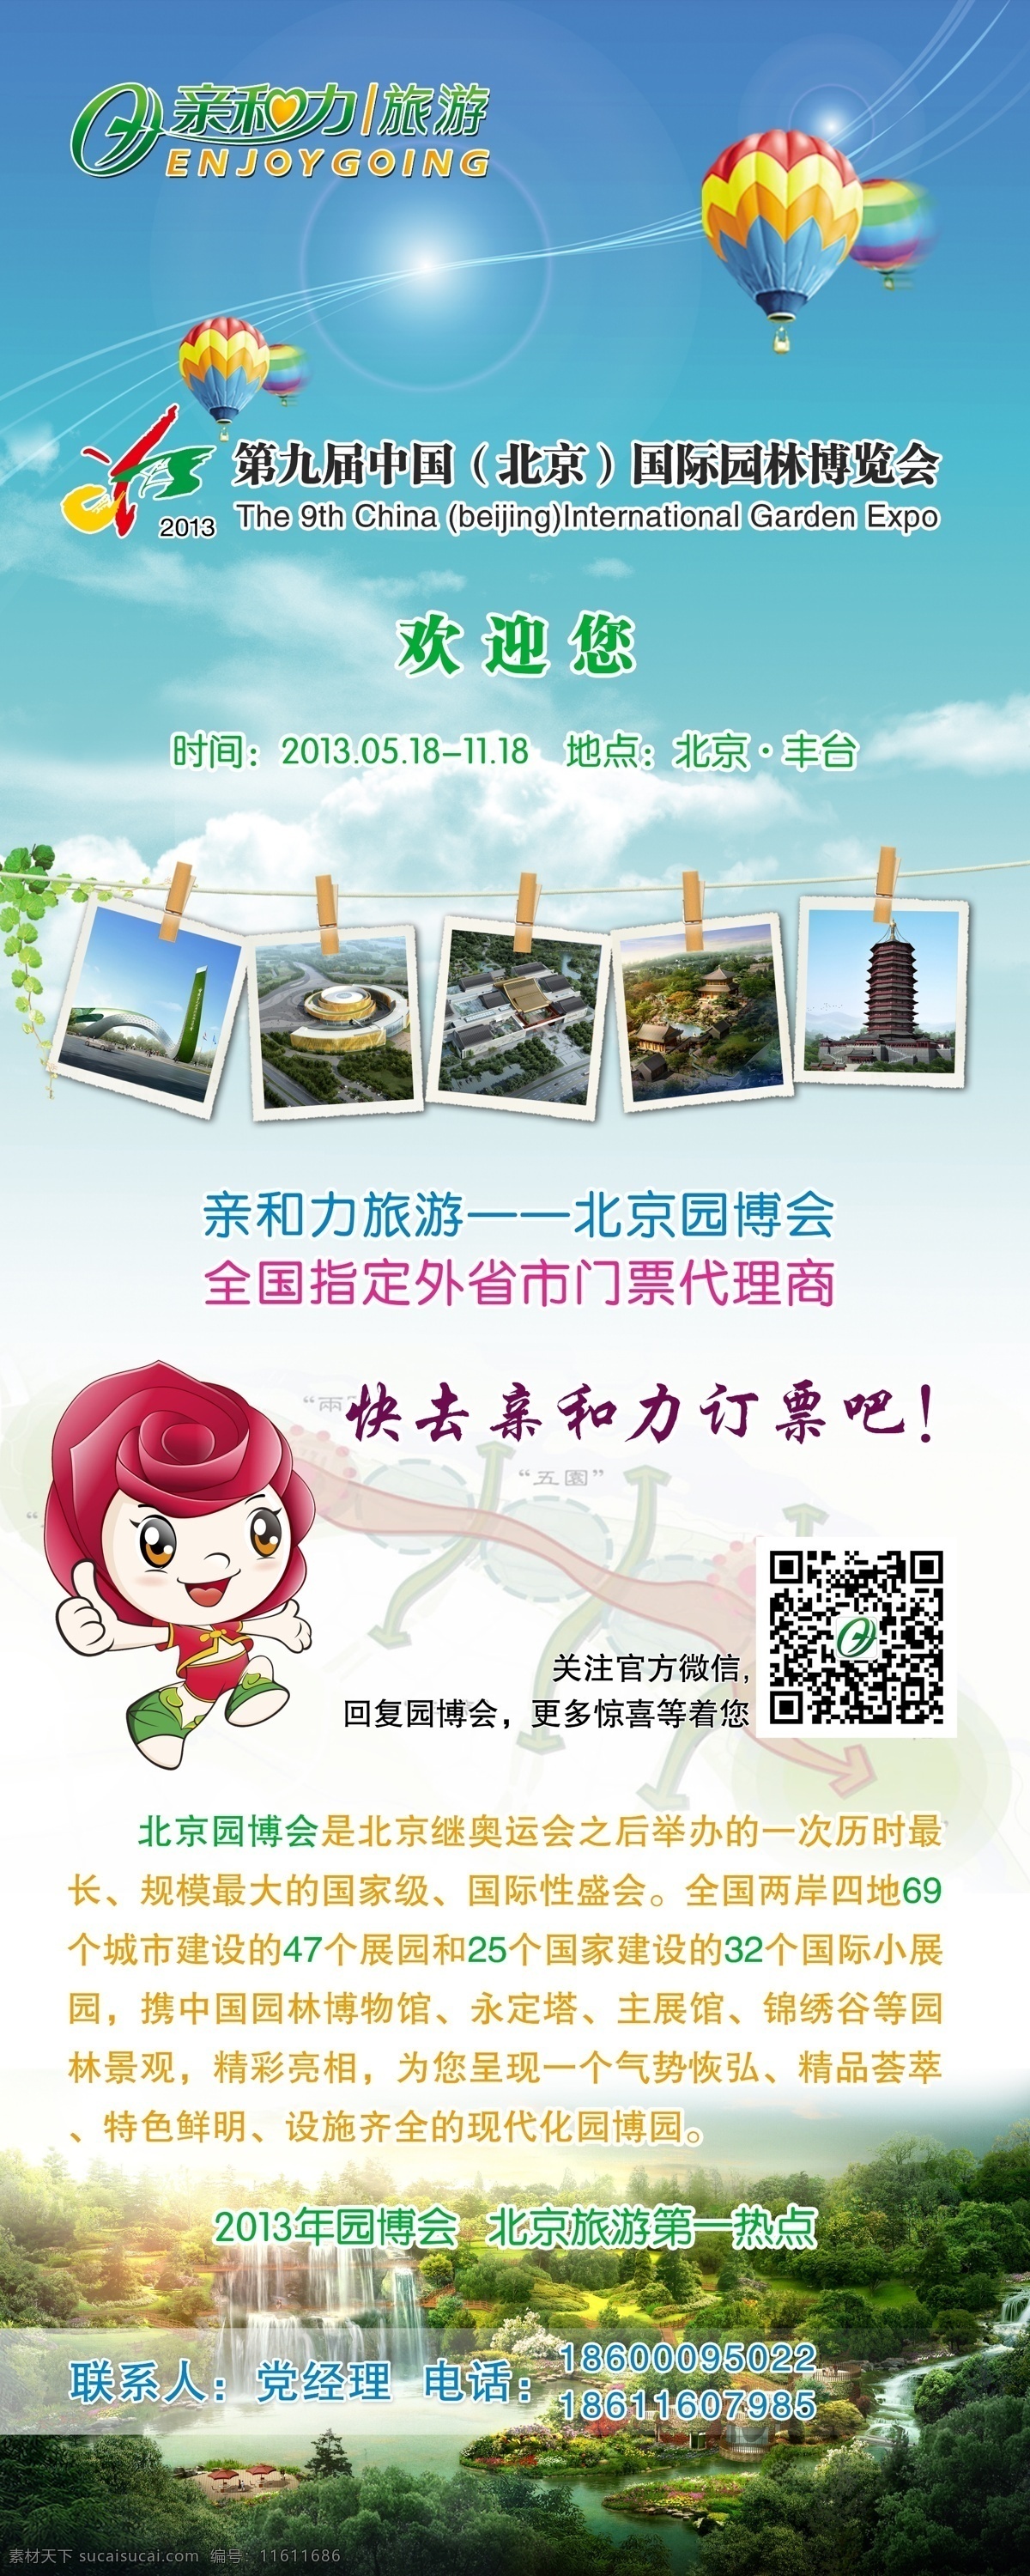 旅游展架 展架 易拉宝 北京园博会 海报宣传 展板 海报 旅游 旅游海报 广告设计模板 源文件